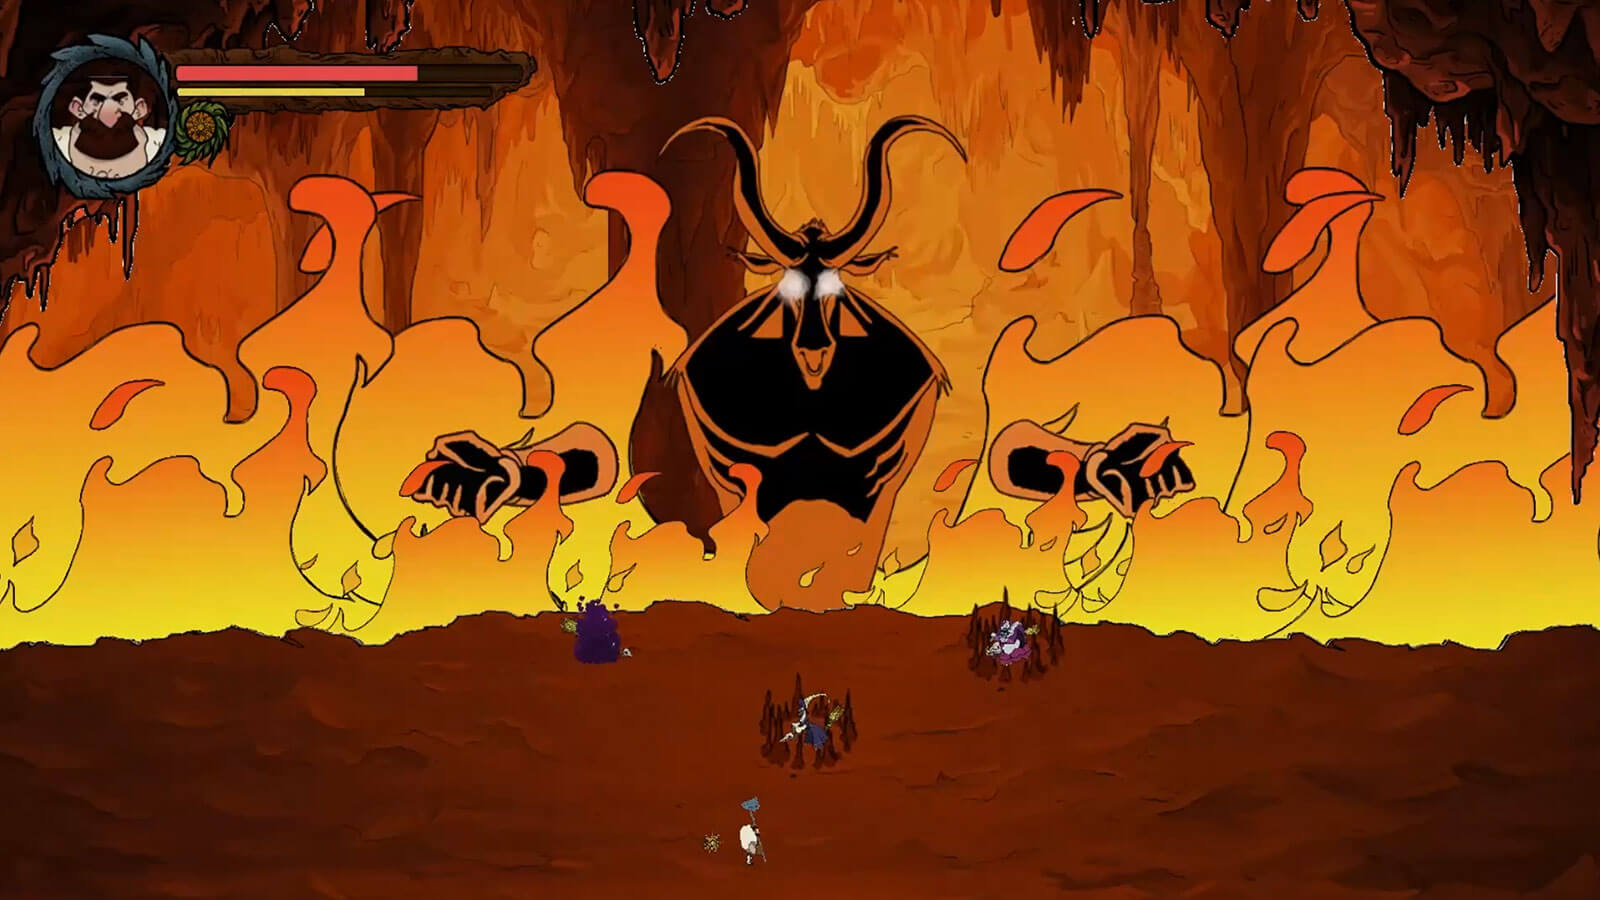 Un enorme demonio de fuego se eleva sobre un jugador en una plataforma